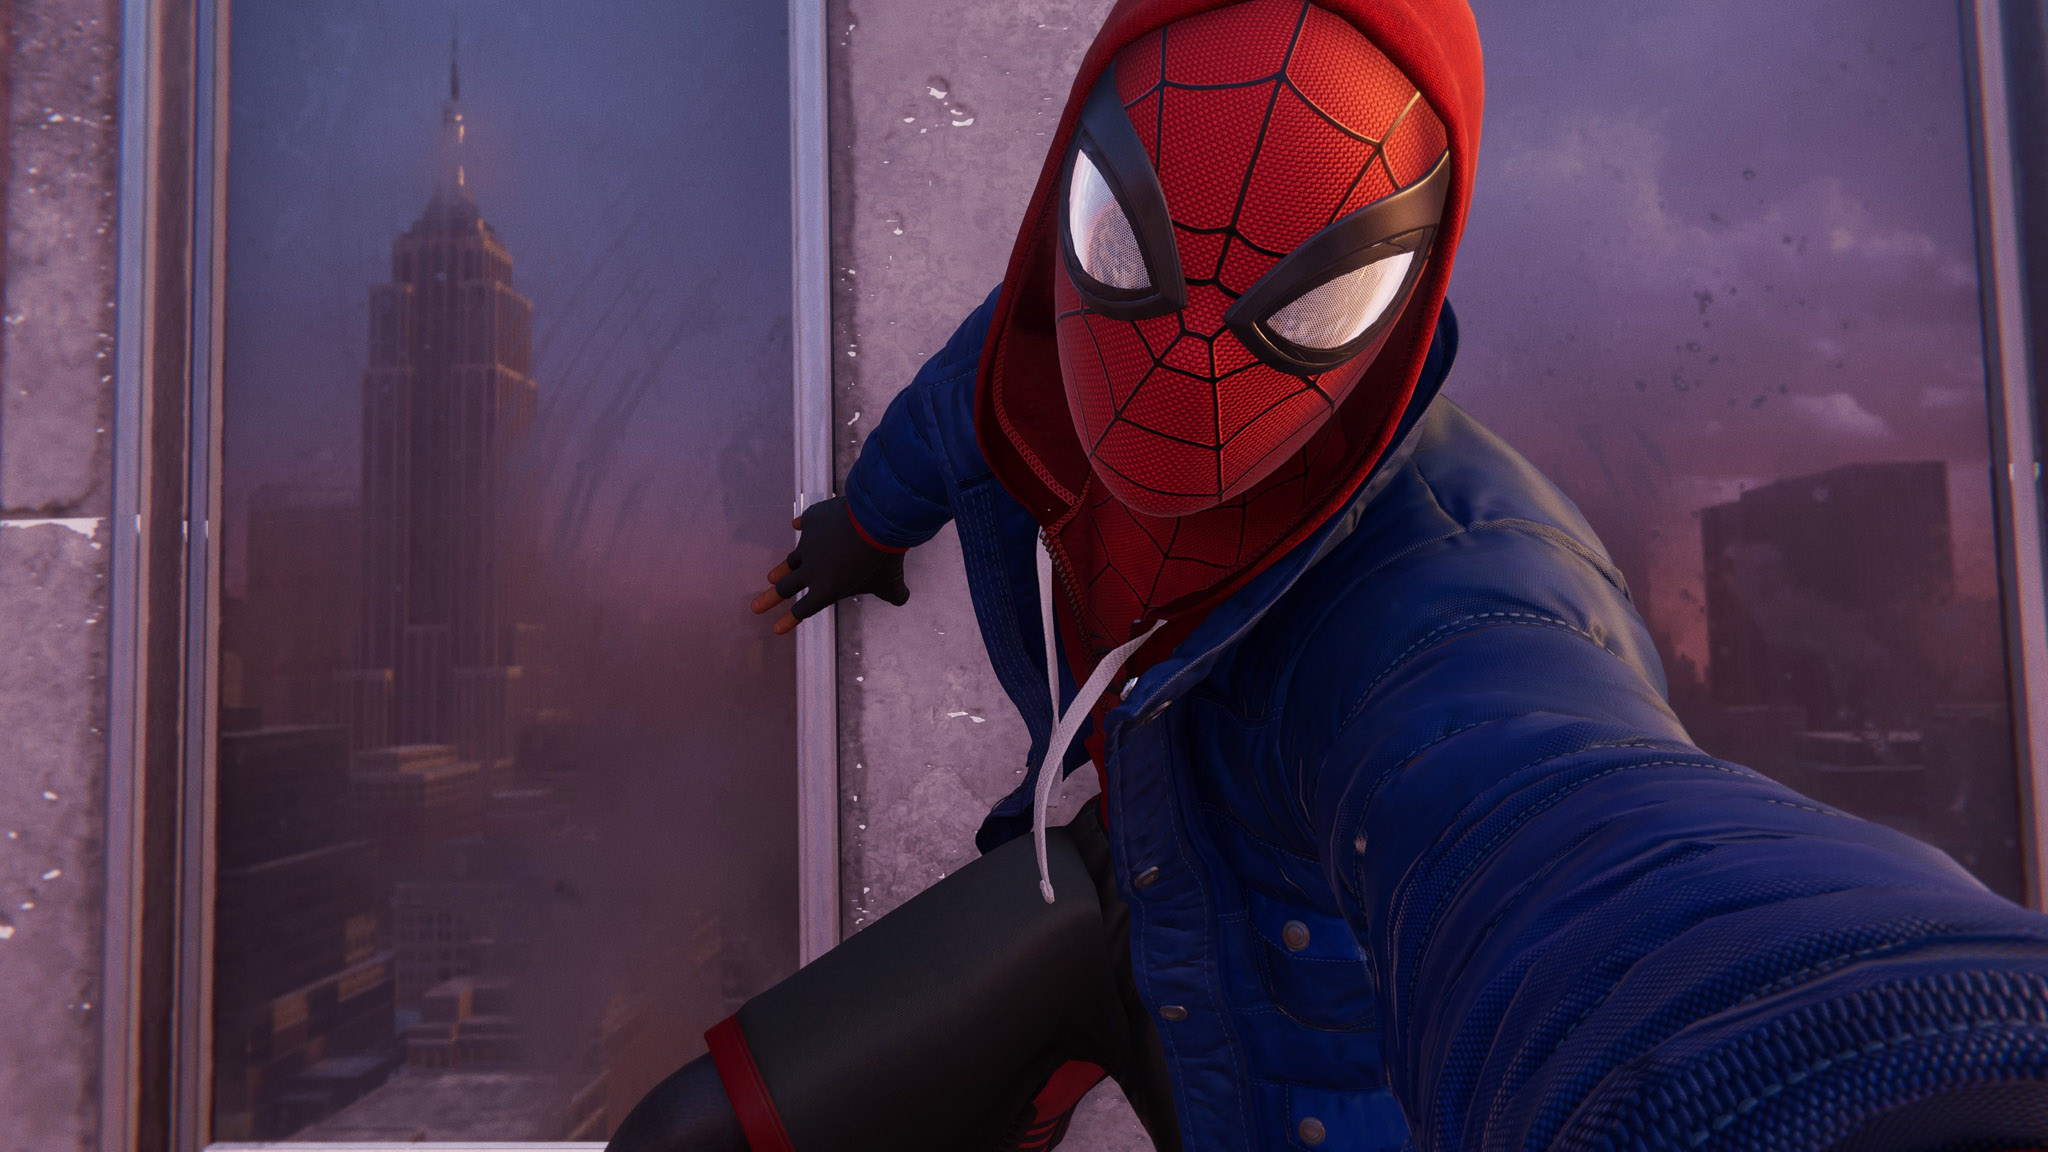 Đánh giá game Spider-Man: Miles Morales theo kiểu “chưa có máy PS5, chơi  tạm bản PS4”